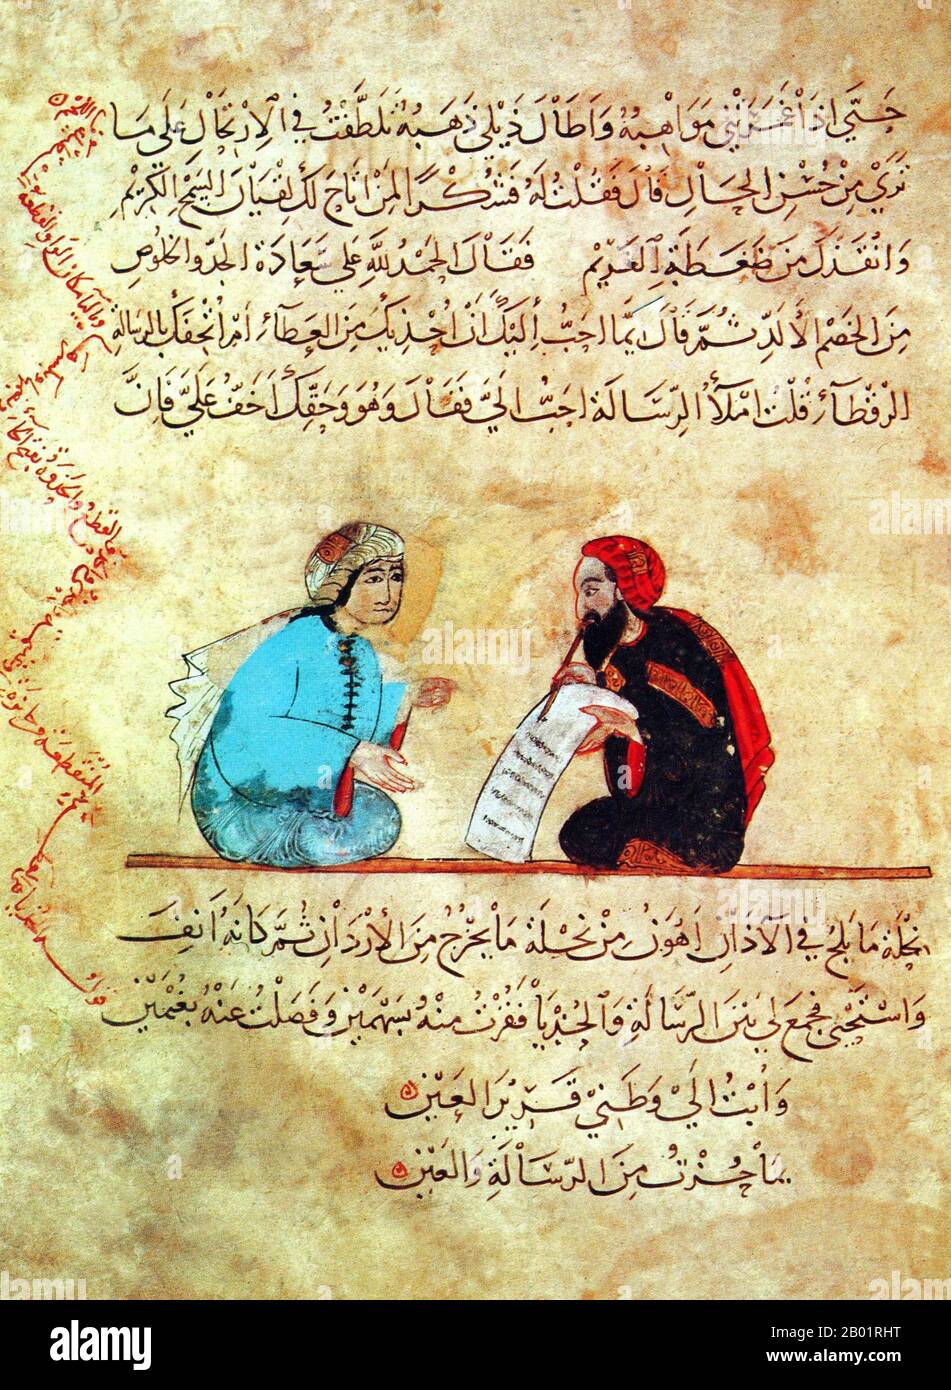 Iraq: Una donna che visita uno scriba. Pittura in miniatura di Yahya ibn Mahmud al-Wasiti, 1237 d.C. Yahyâ ibn Mahmûd al-Wâsitî è stato un artista arabo islamico del XIII secolo. Al-Wasiti è nato a Wasit, nel sud dell'Iraq. Era noto per le sue illustrazioni del Maqam di al-Hariri. I Maqāma (letteralmente "assemblee") sono un genere letterario arabo (originariamente) di prosa rimata con intervalli di poesia in cui la stravaganza retorica è evidente. Si dice che l'autore del X secolo Badī' al-Zaman al-Hamadhāni abbia inventato la forma, che fu estesa da al-Hariri di Bassora nel secolo successivo. Foto Stock